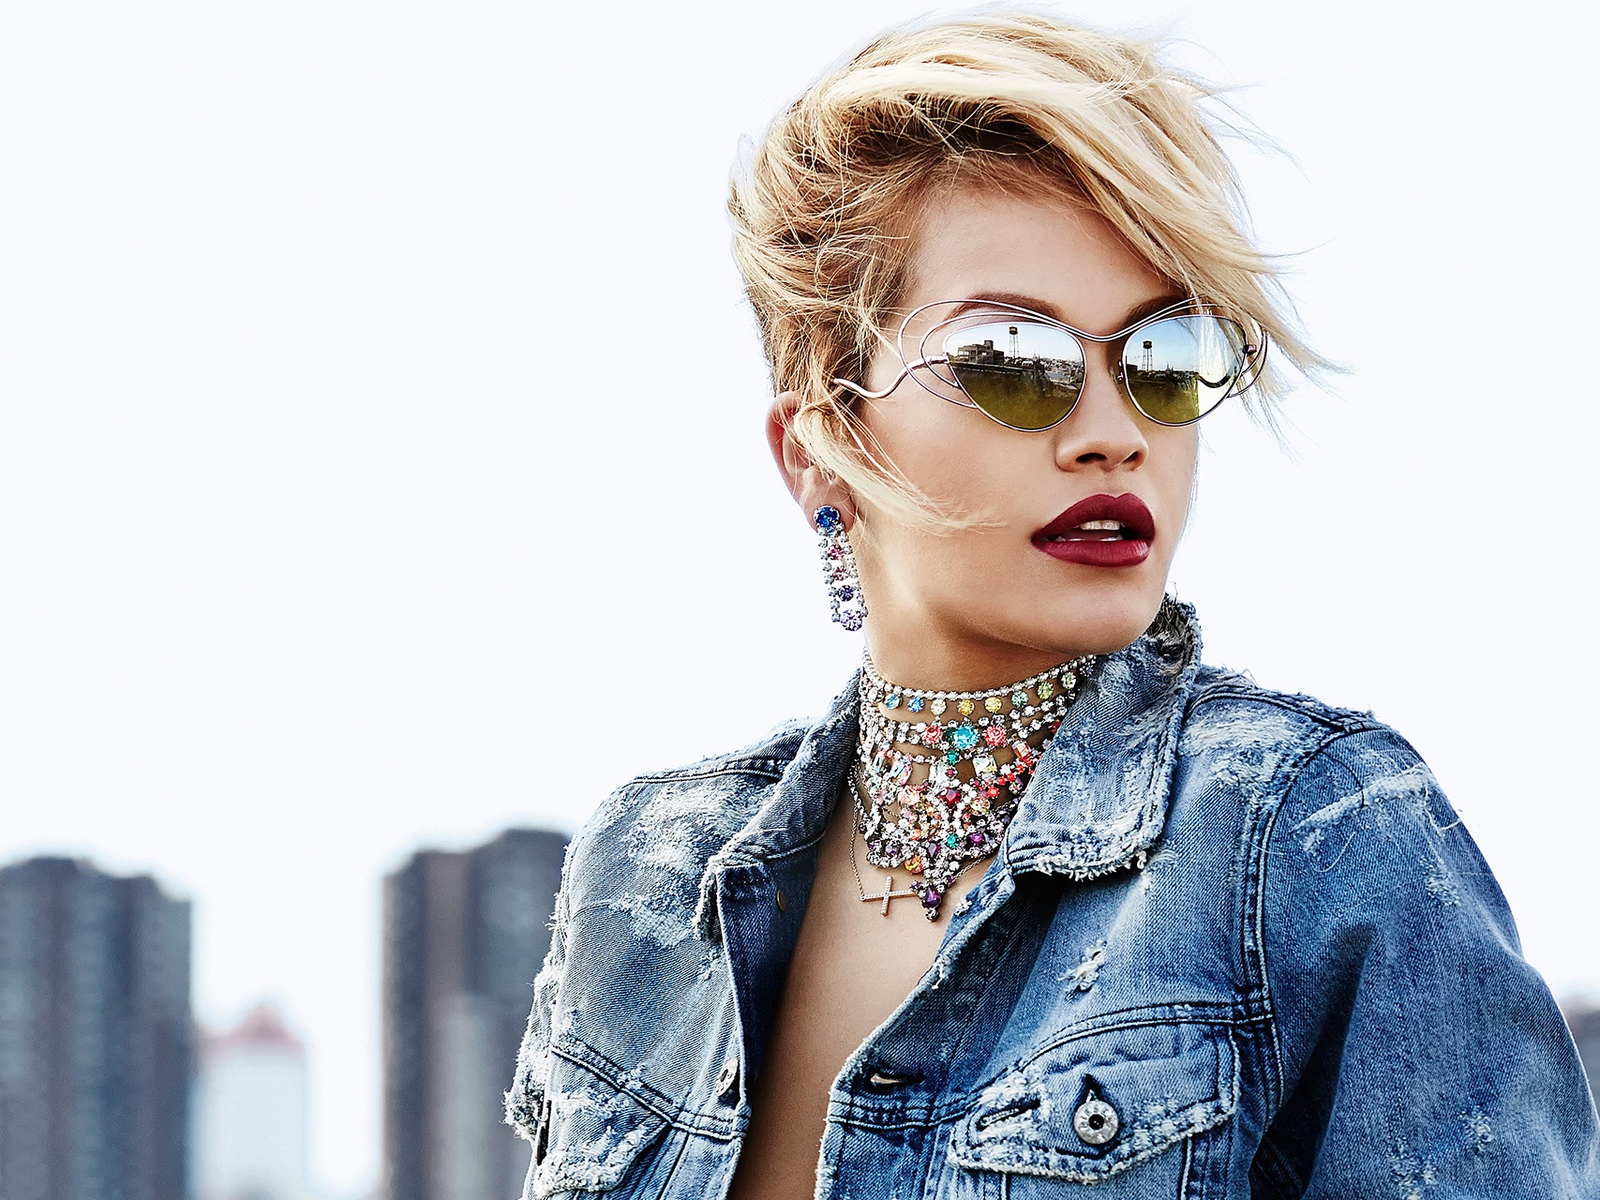 Rita Ora with Sunglasses for 1600 x 1200 resolution